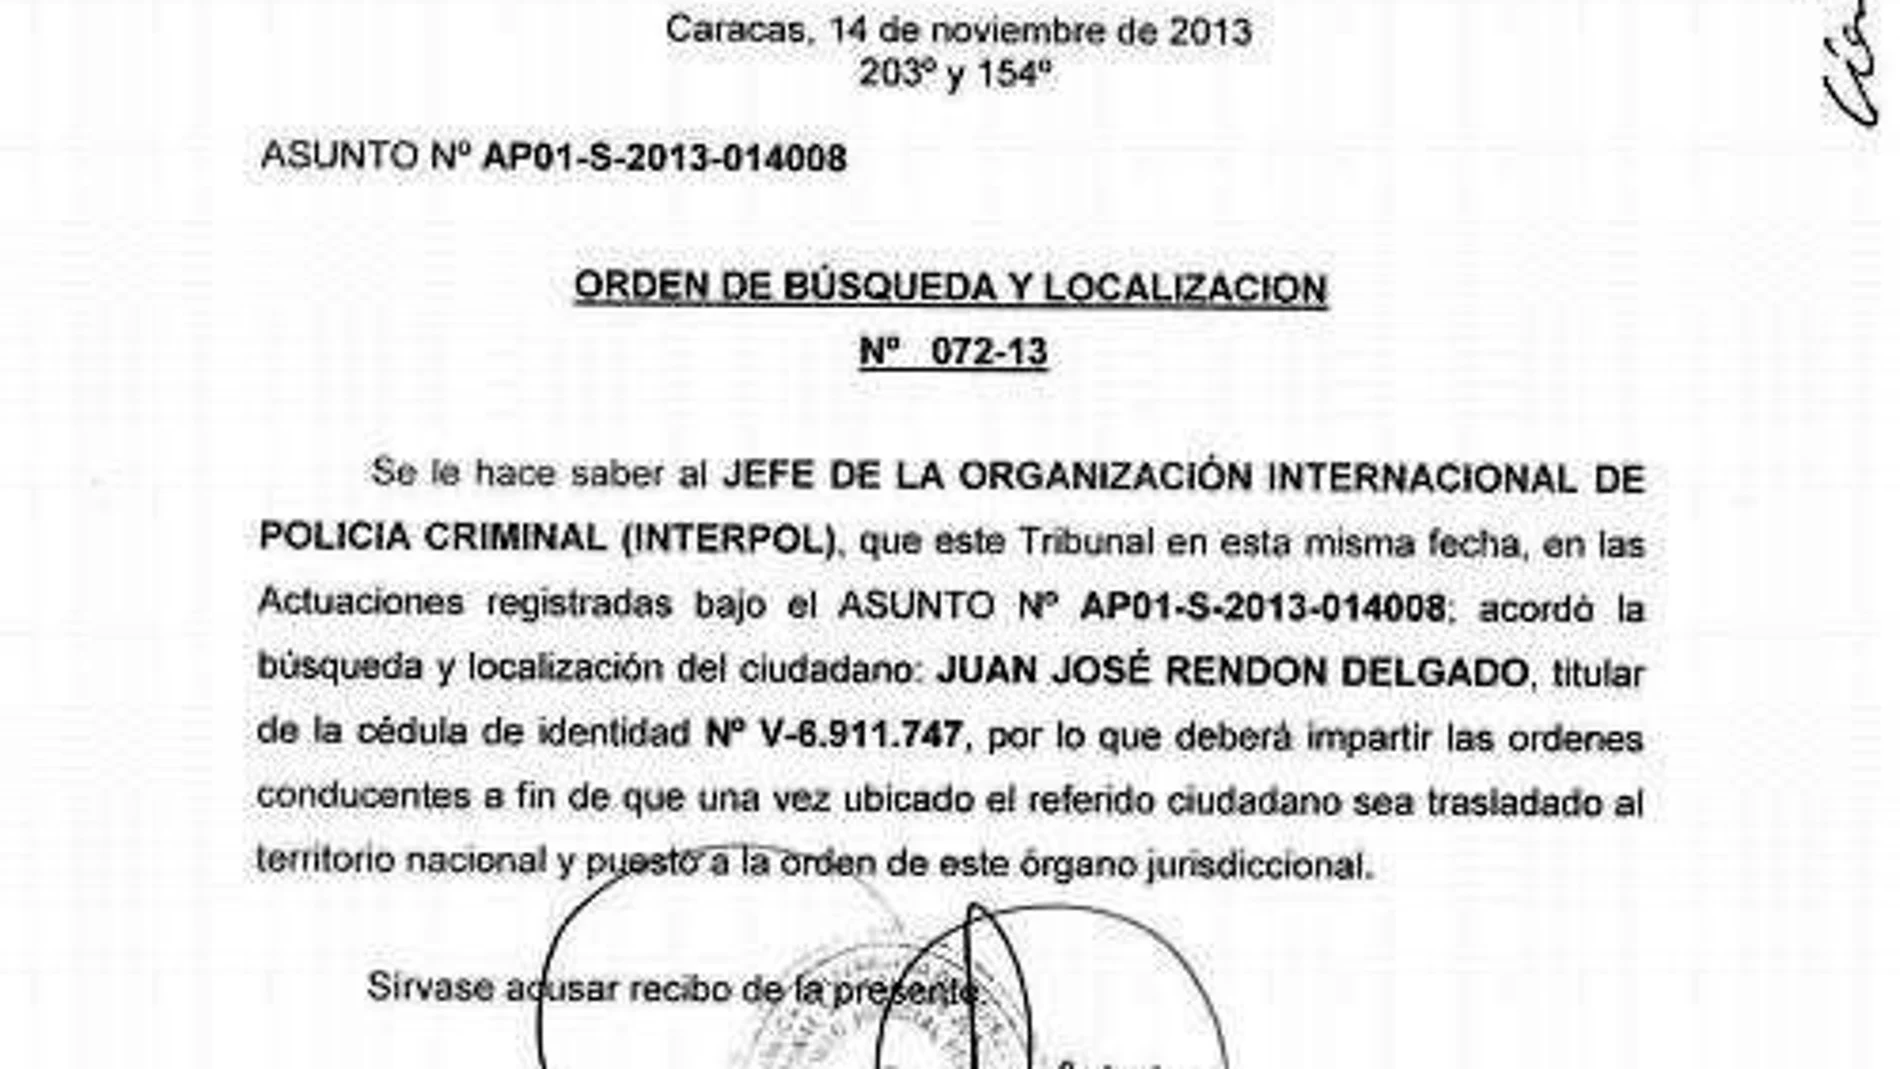 Petición hecha a la Interpol para que aprese al opositor Juan José Rendón, acusado de violencia de género.